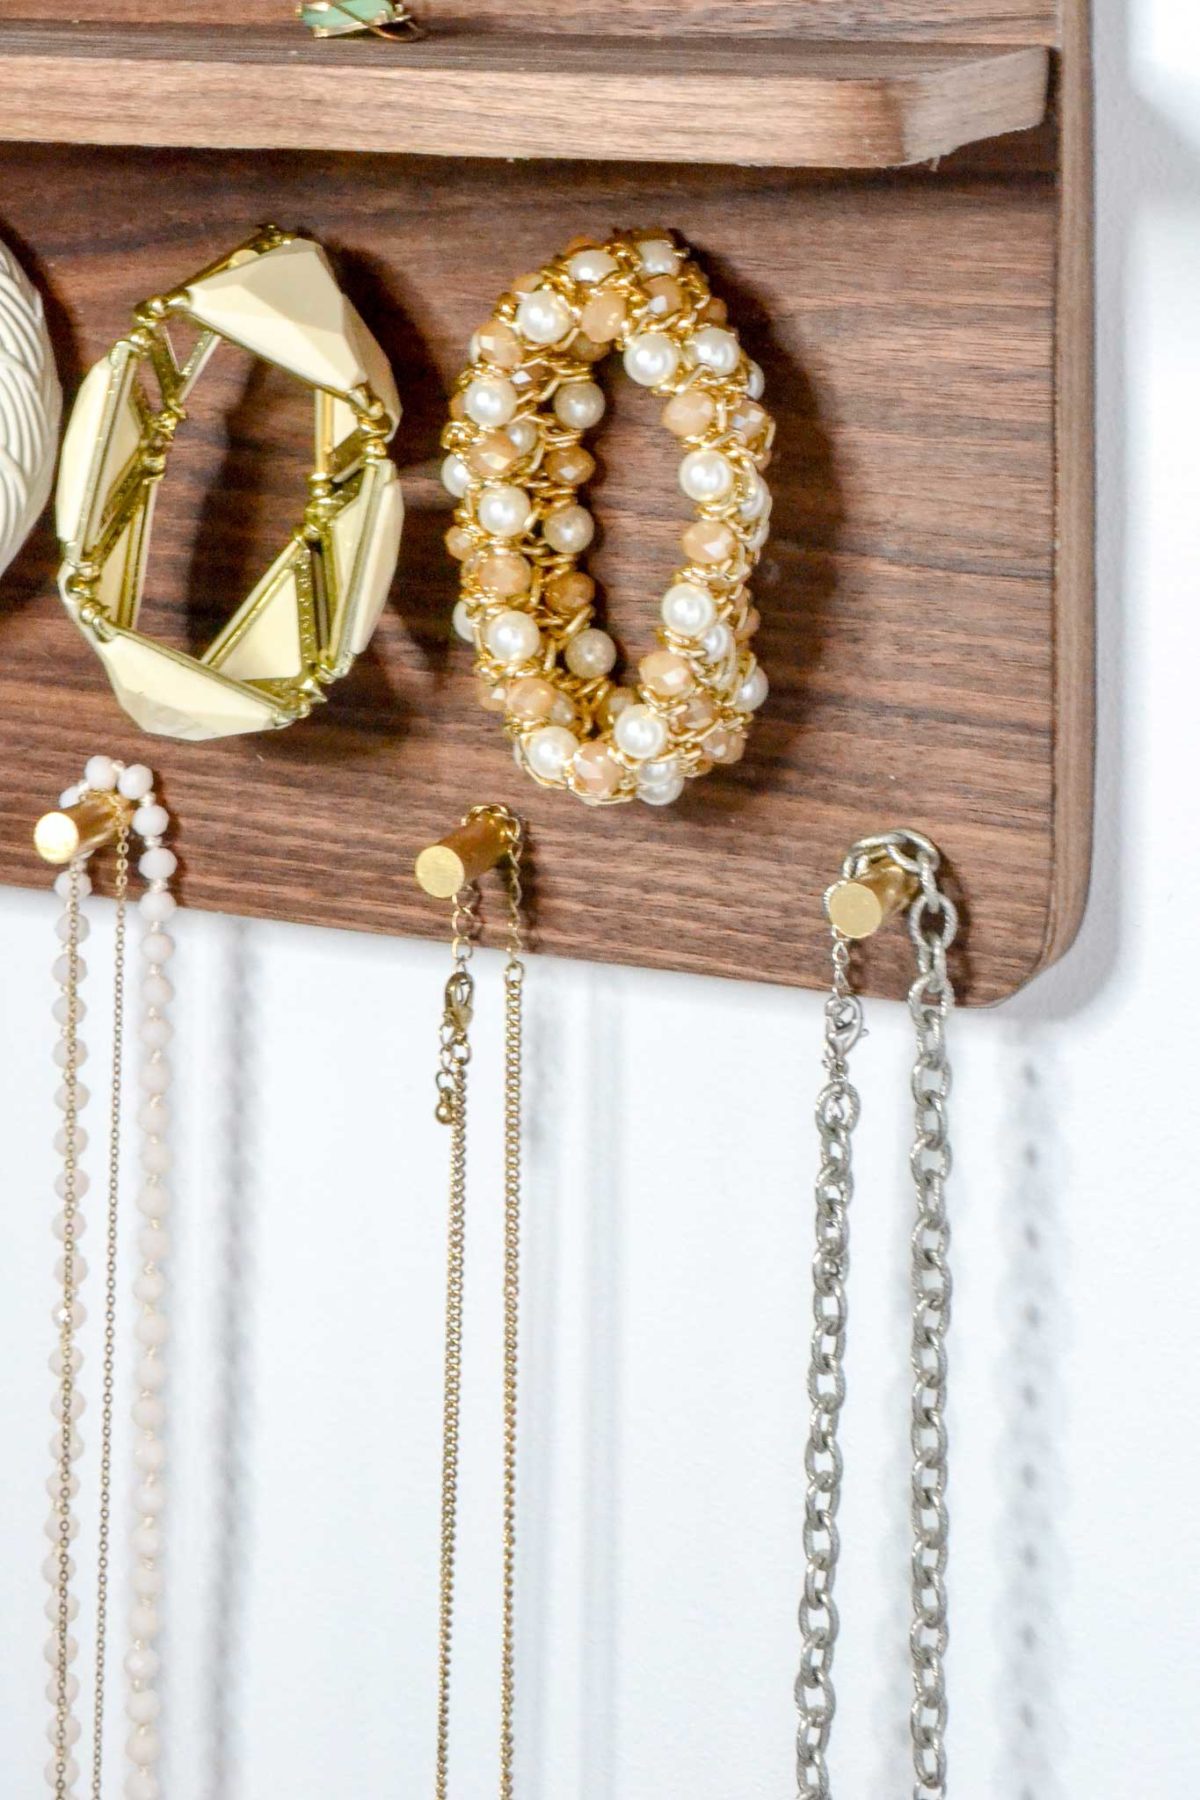 bracelets-and-necklaces-on-brass-rods